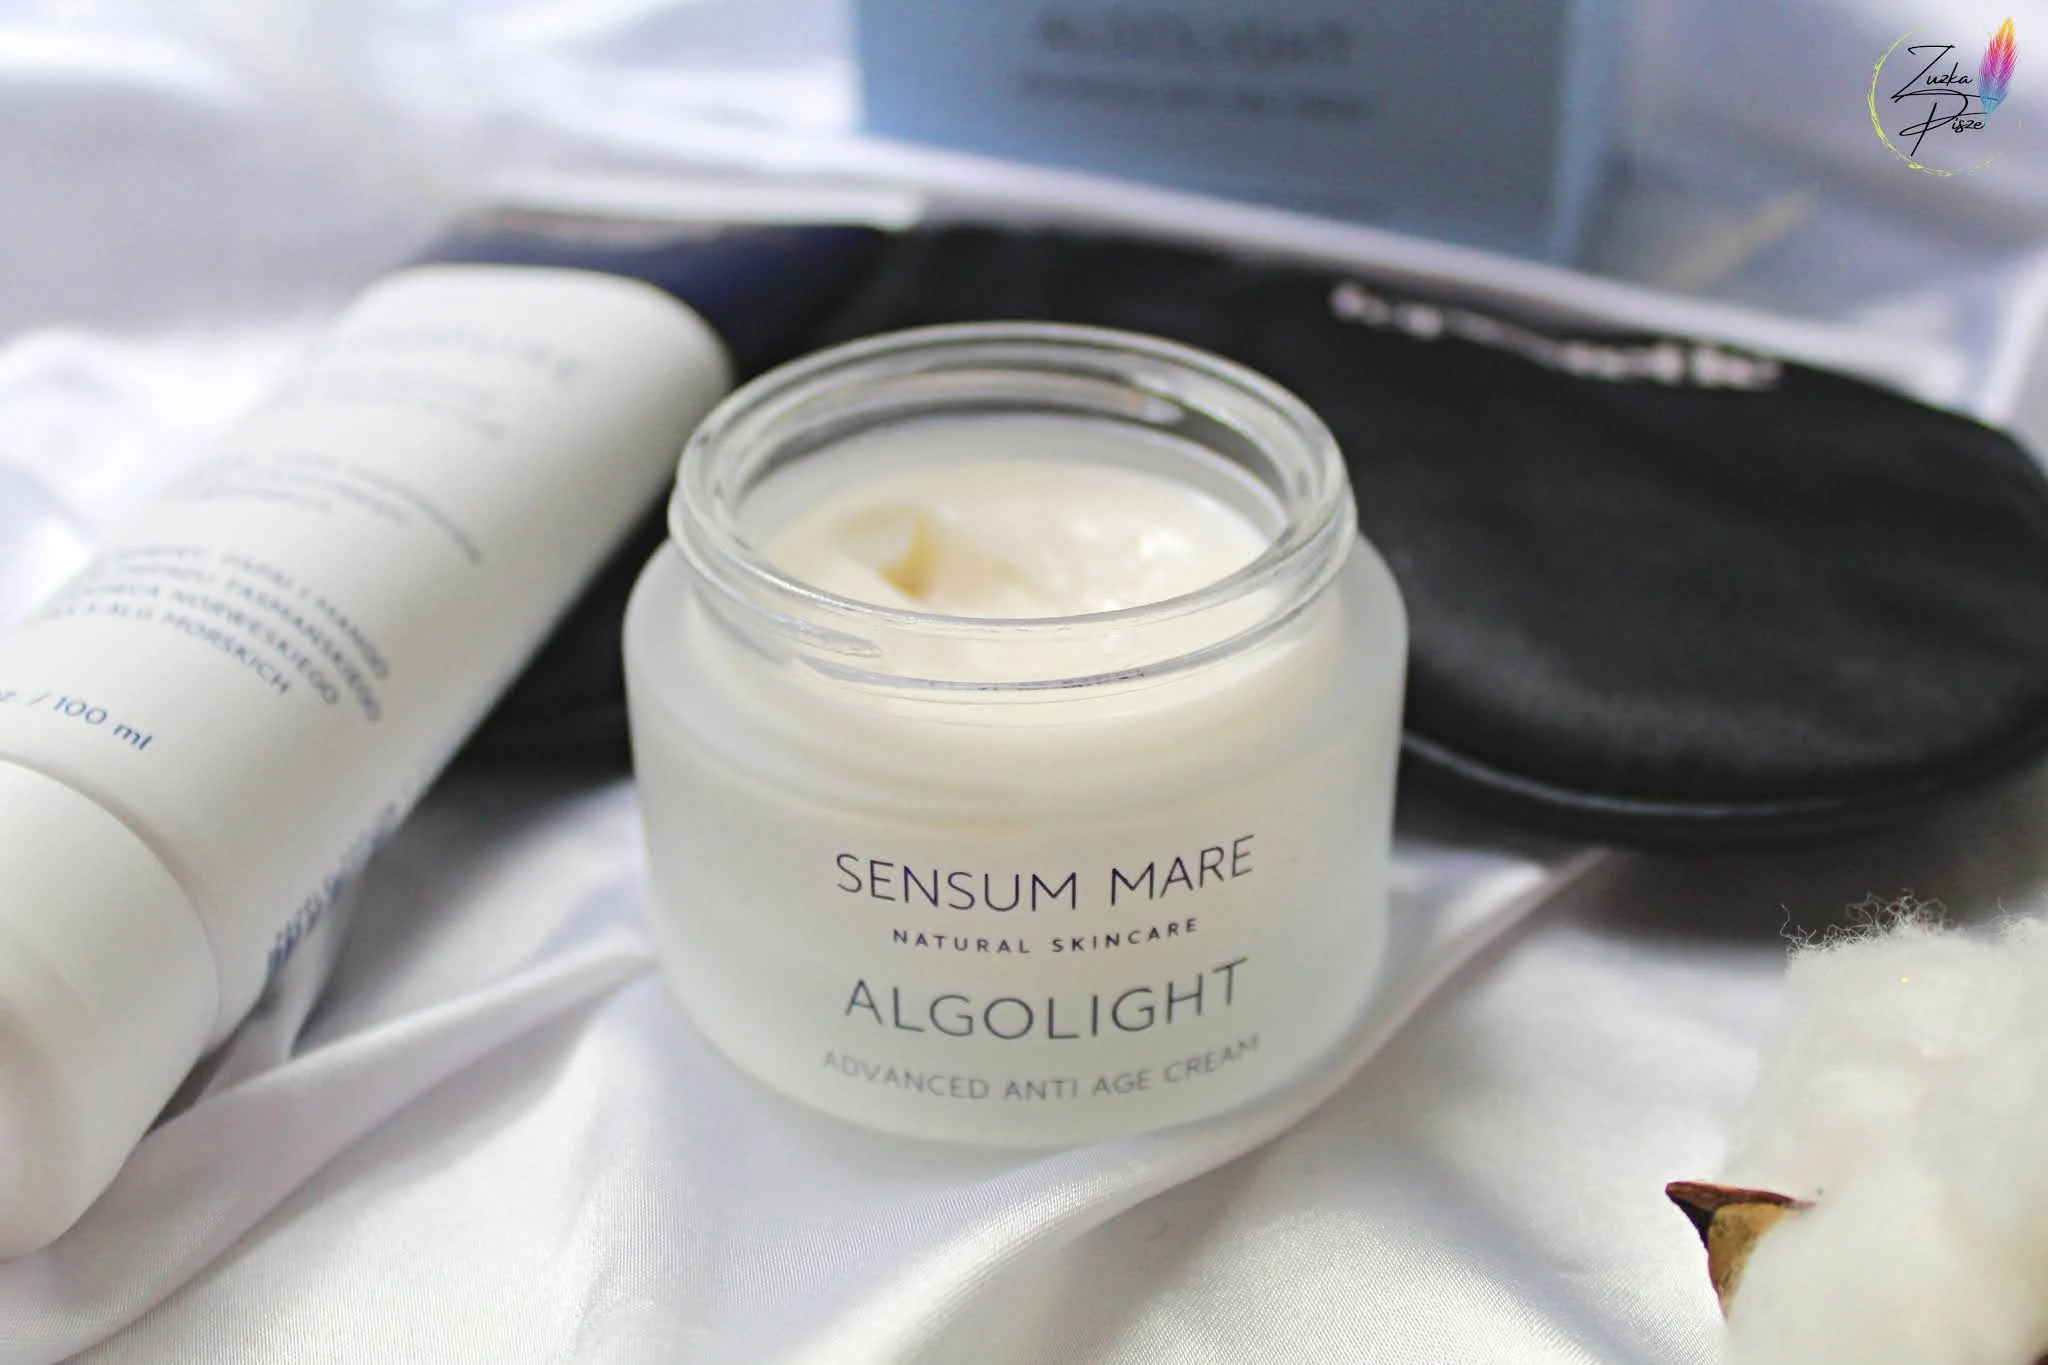 Sensum Mare Algolight Advanced Anti Age Cream